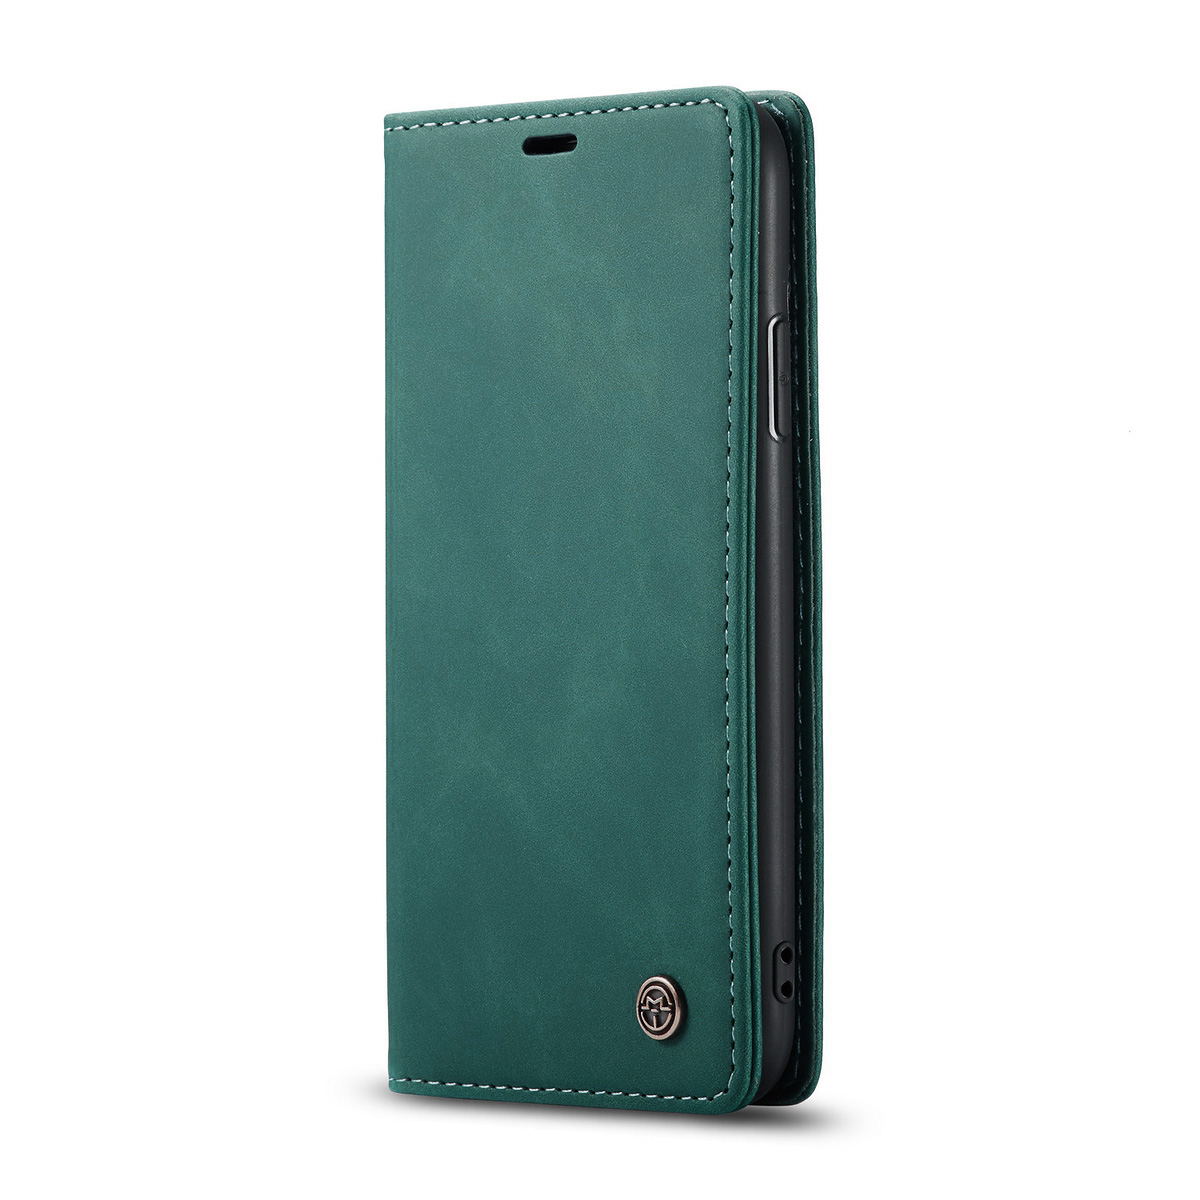 CaseMe plånboksfodral, iPhone 11, grön